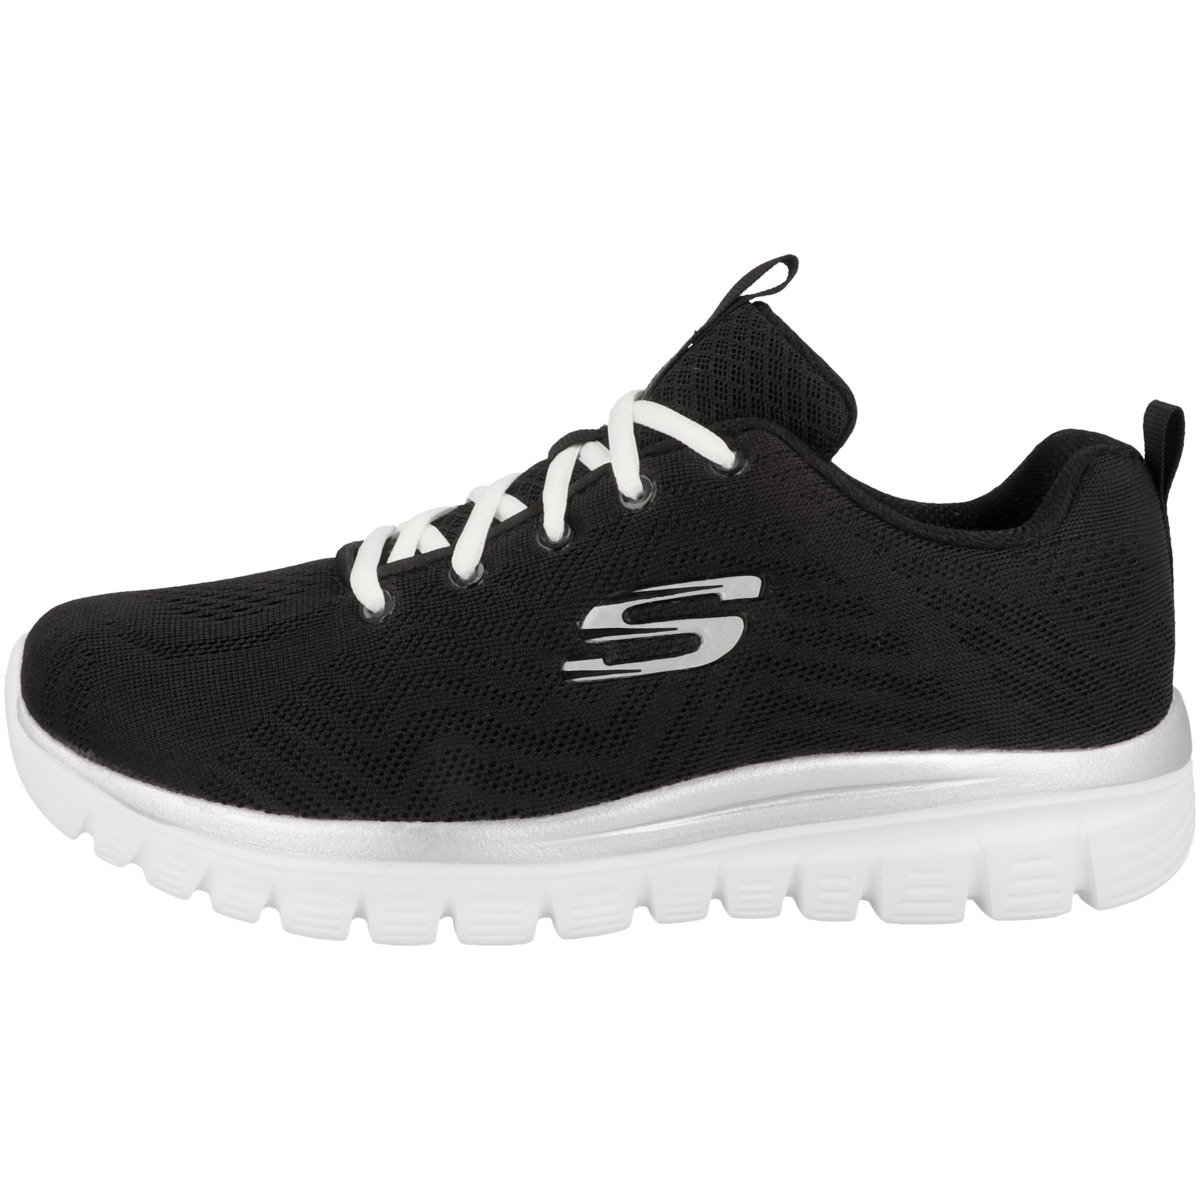 Skechers Graceful - Get Connected Sneaker low